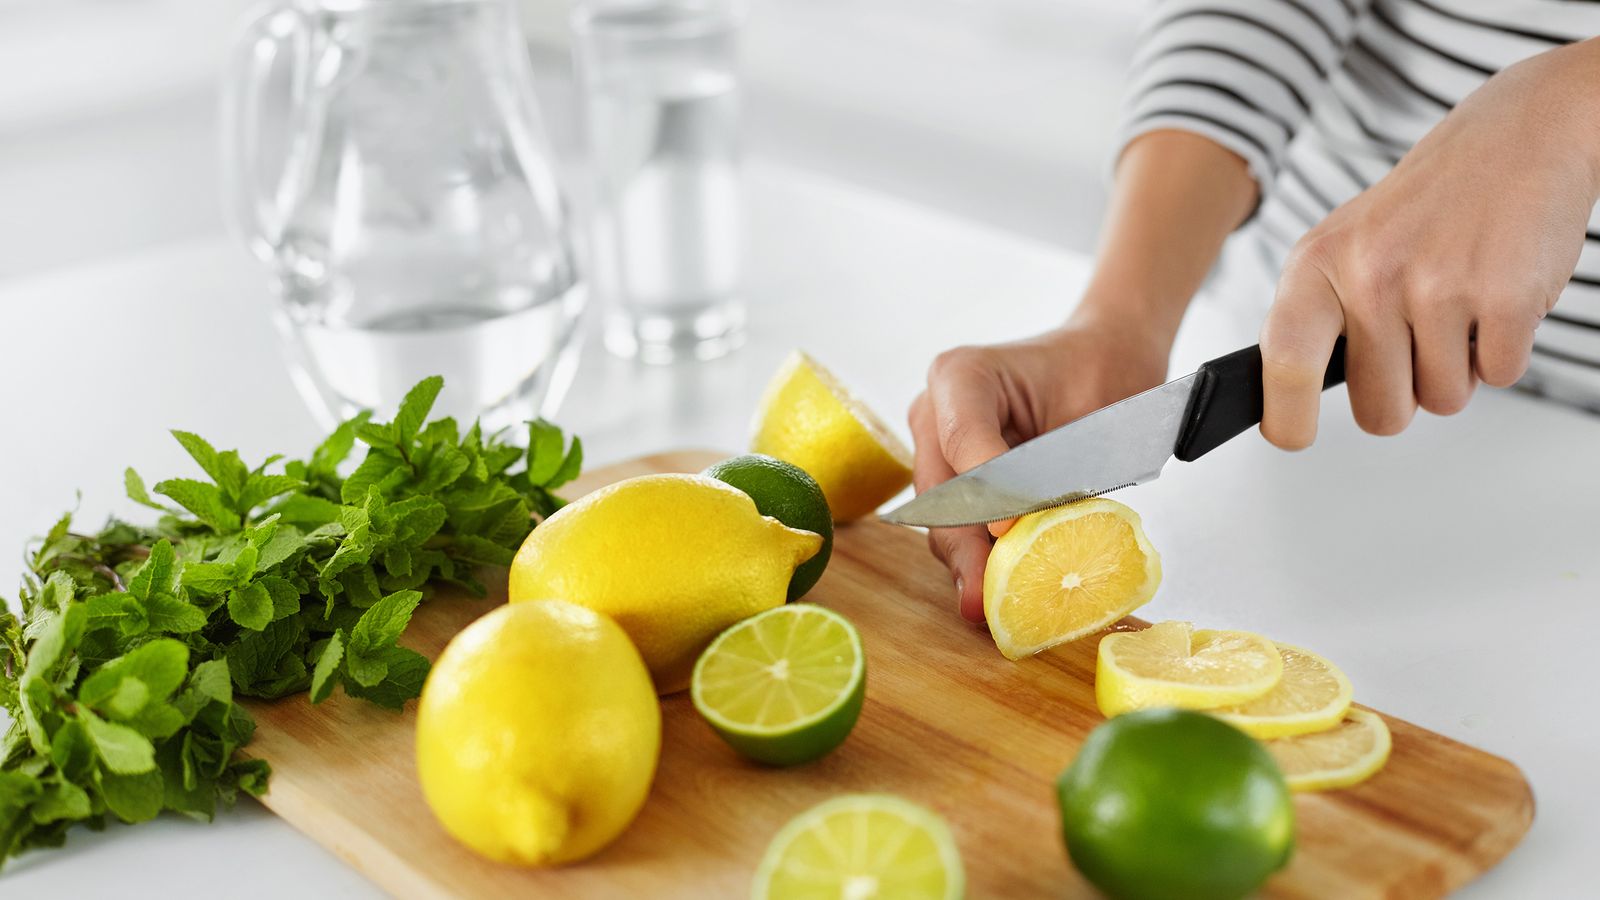 Massnahmen zur Gesundheitsprävention mit Zitronen